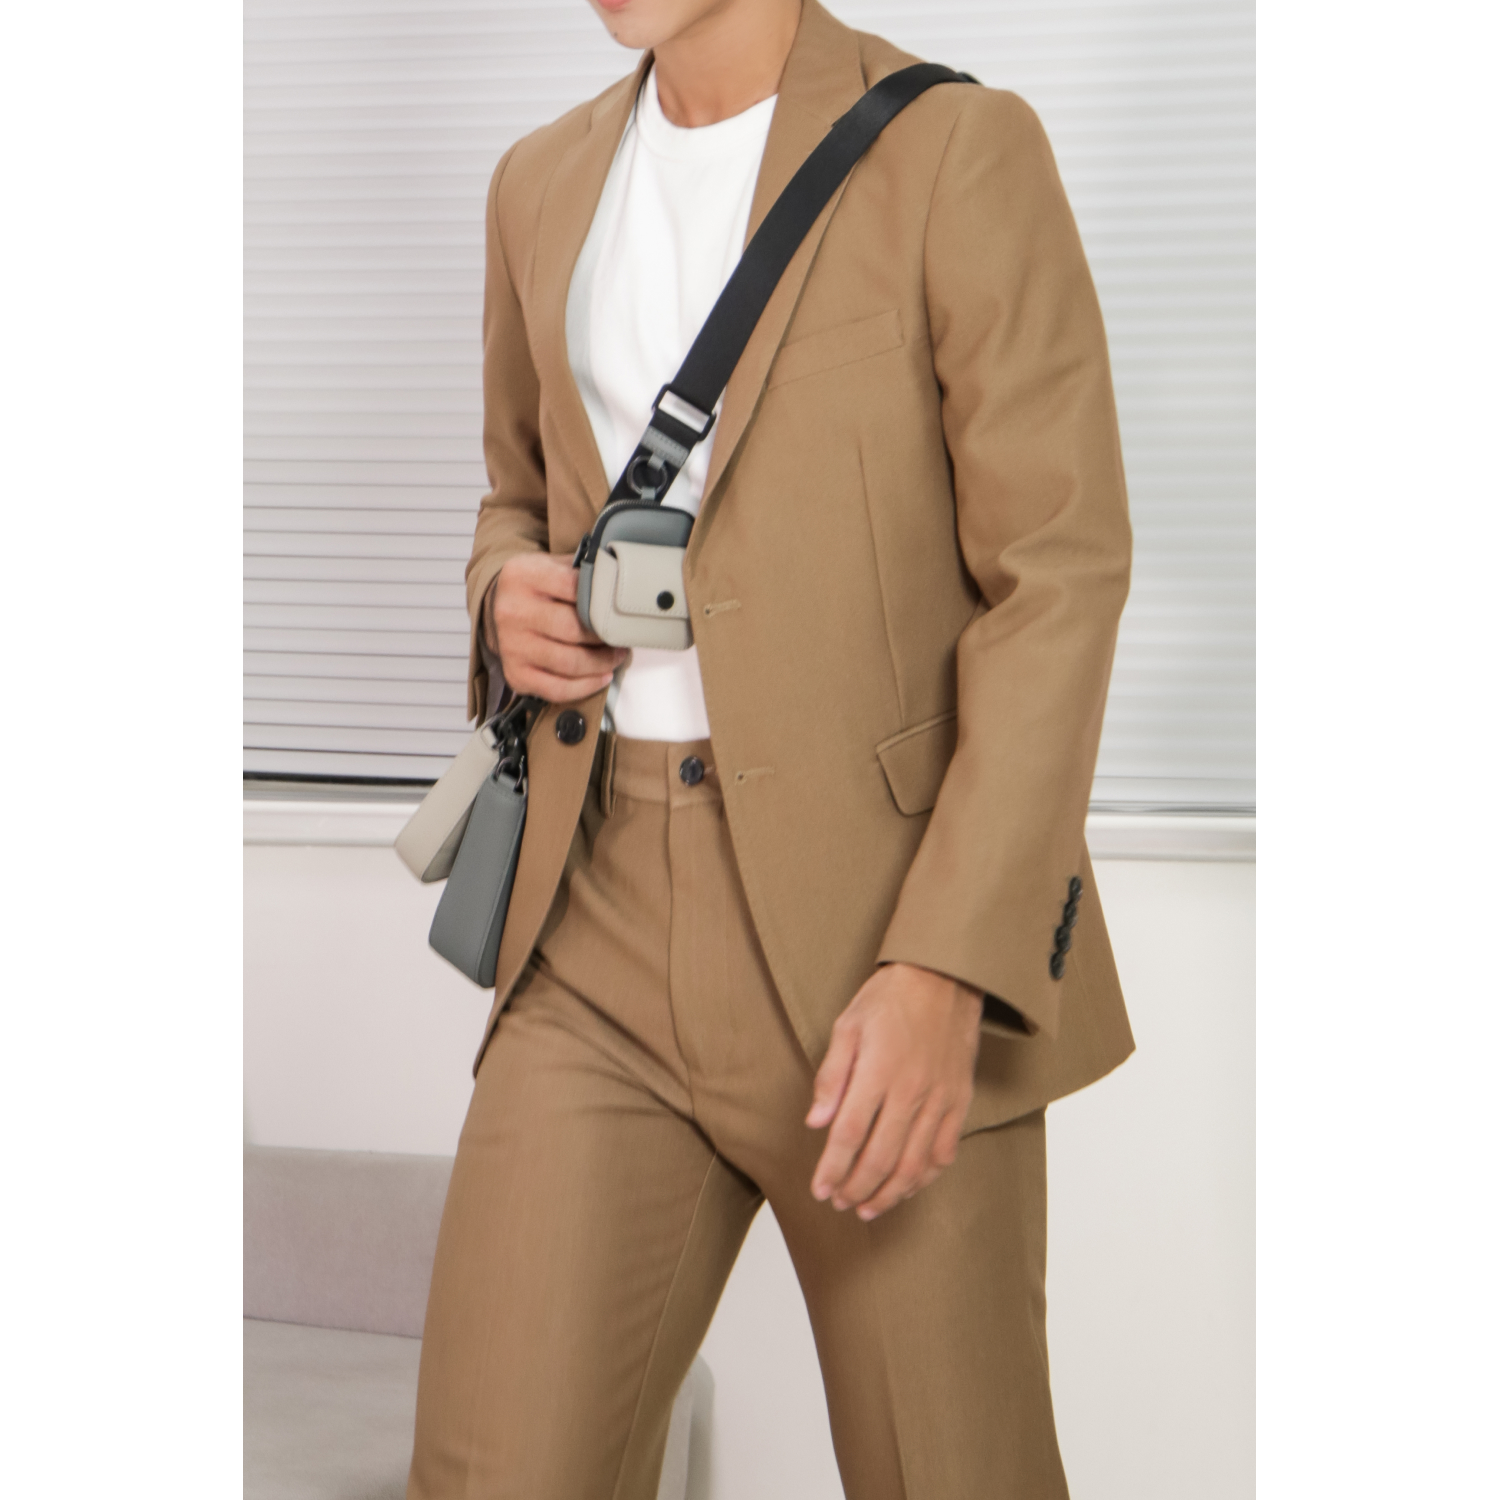 Bộ suit Khaki công sở may đo, thiết kế hai hàng khuy đơn, BASIC-SUIT-2 kiểu dáng Slim Fit, phong cách thanh lịch và sang trọng - HY.WO